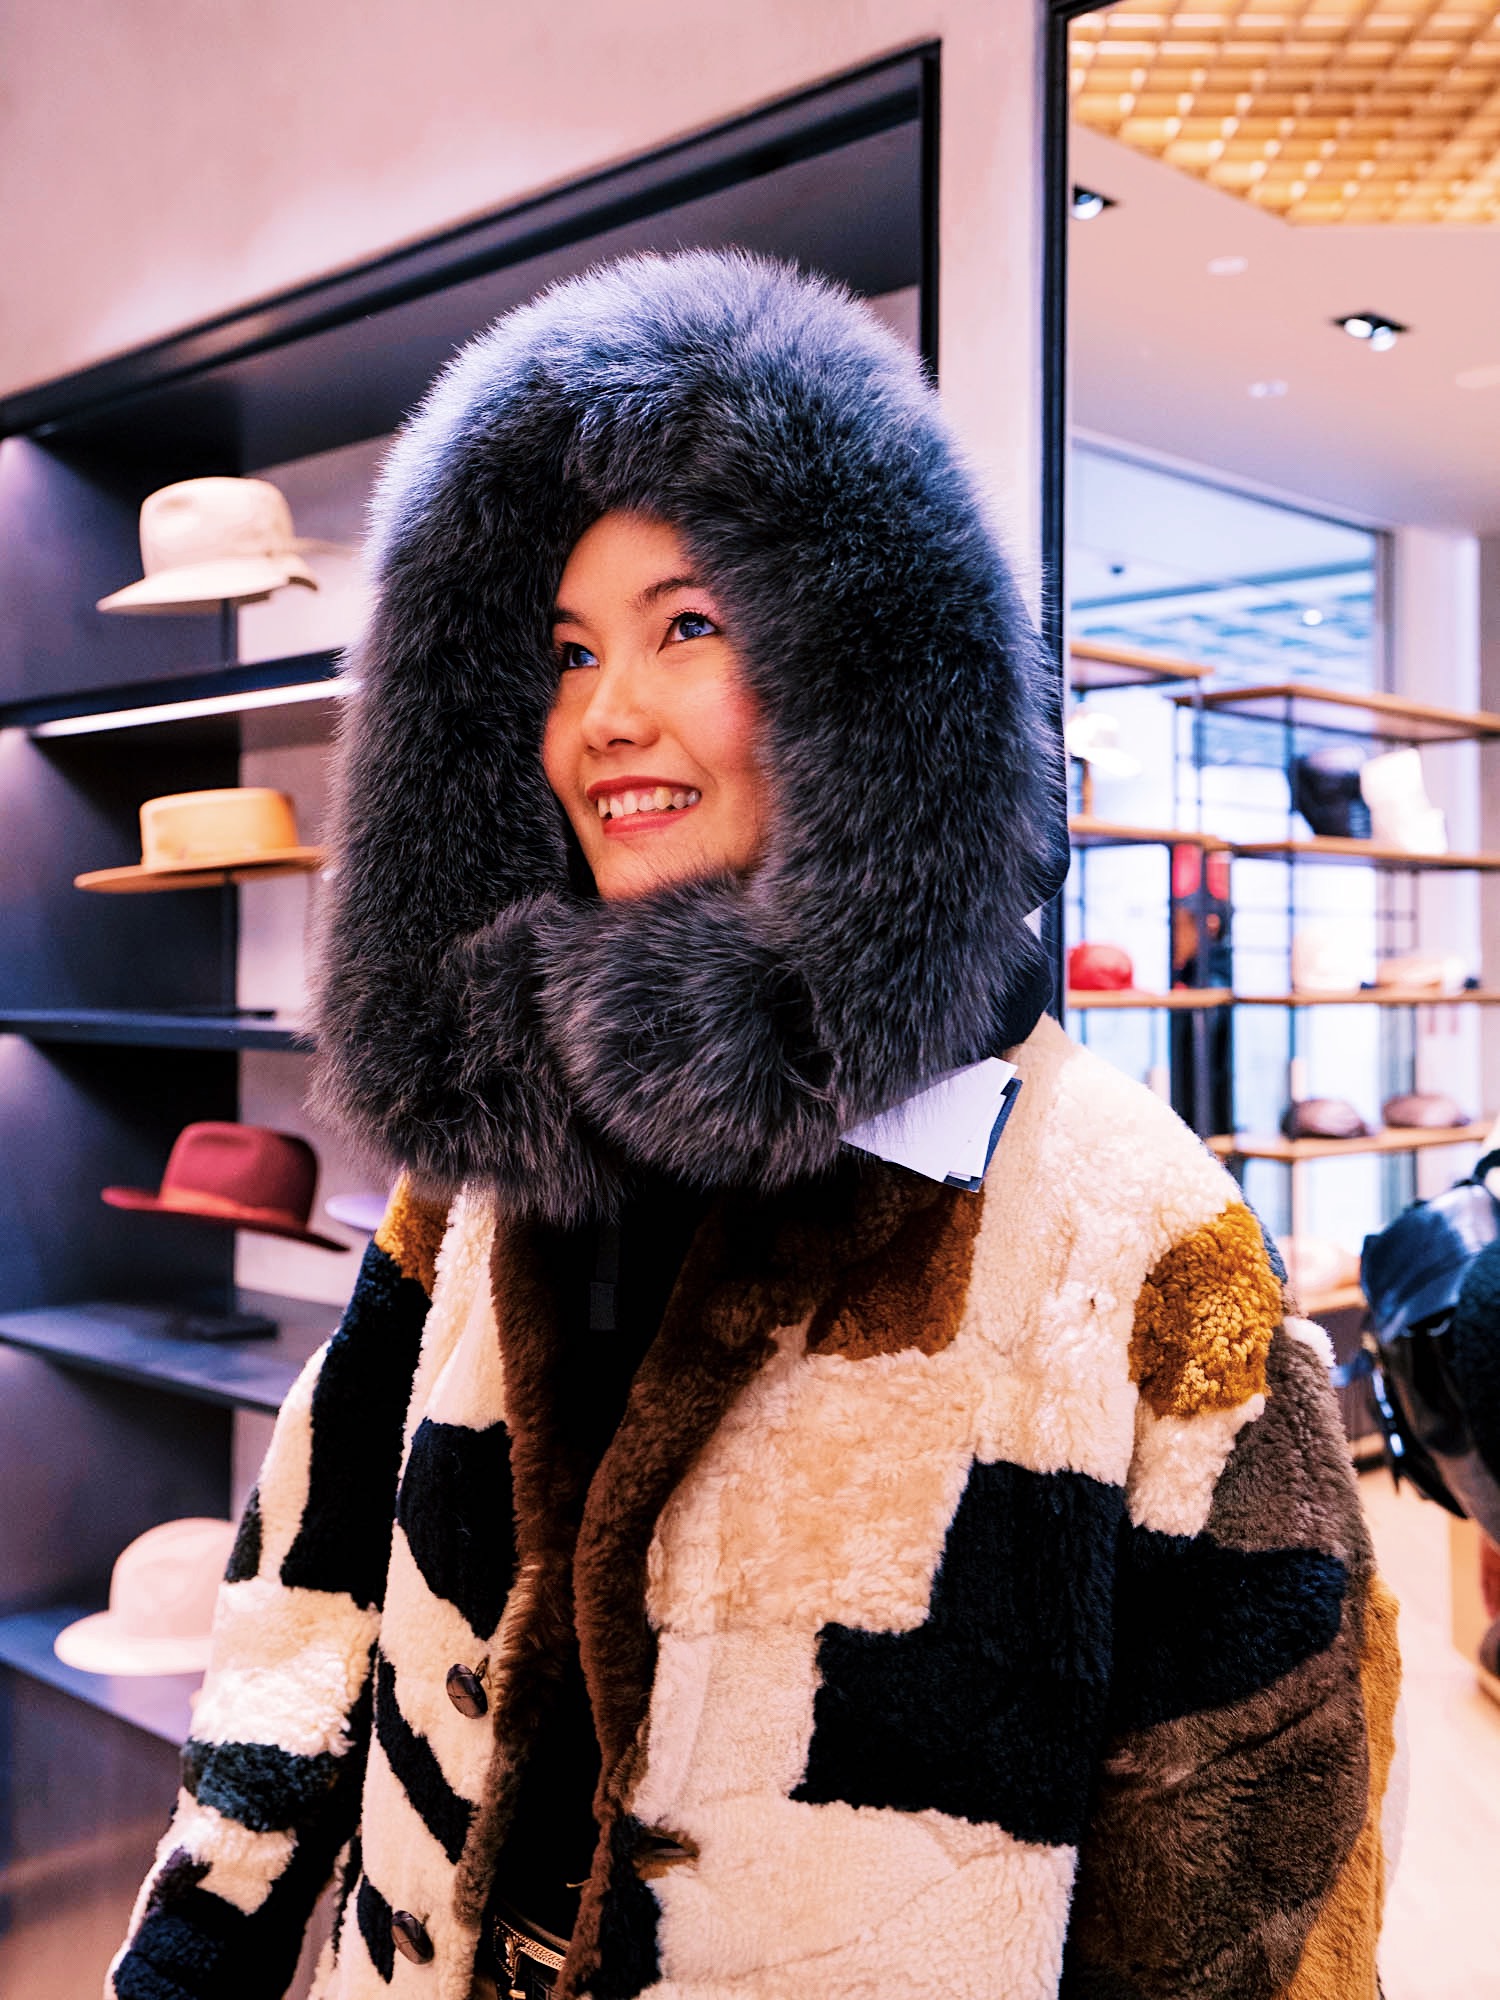 nanphanita is weraing kijima takayuki eskimo style hat winter hat